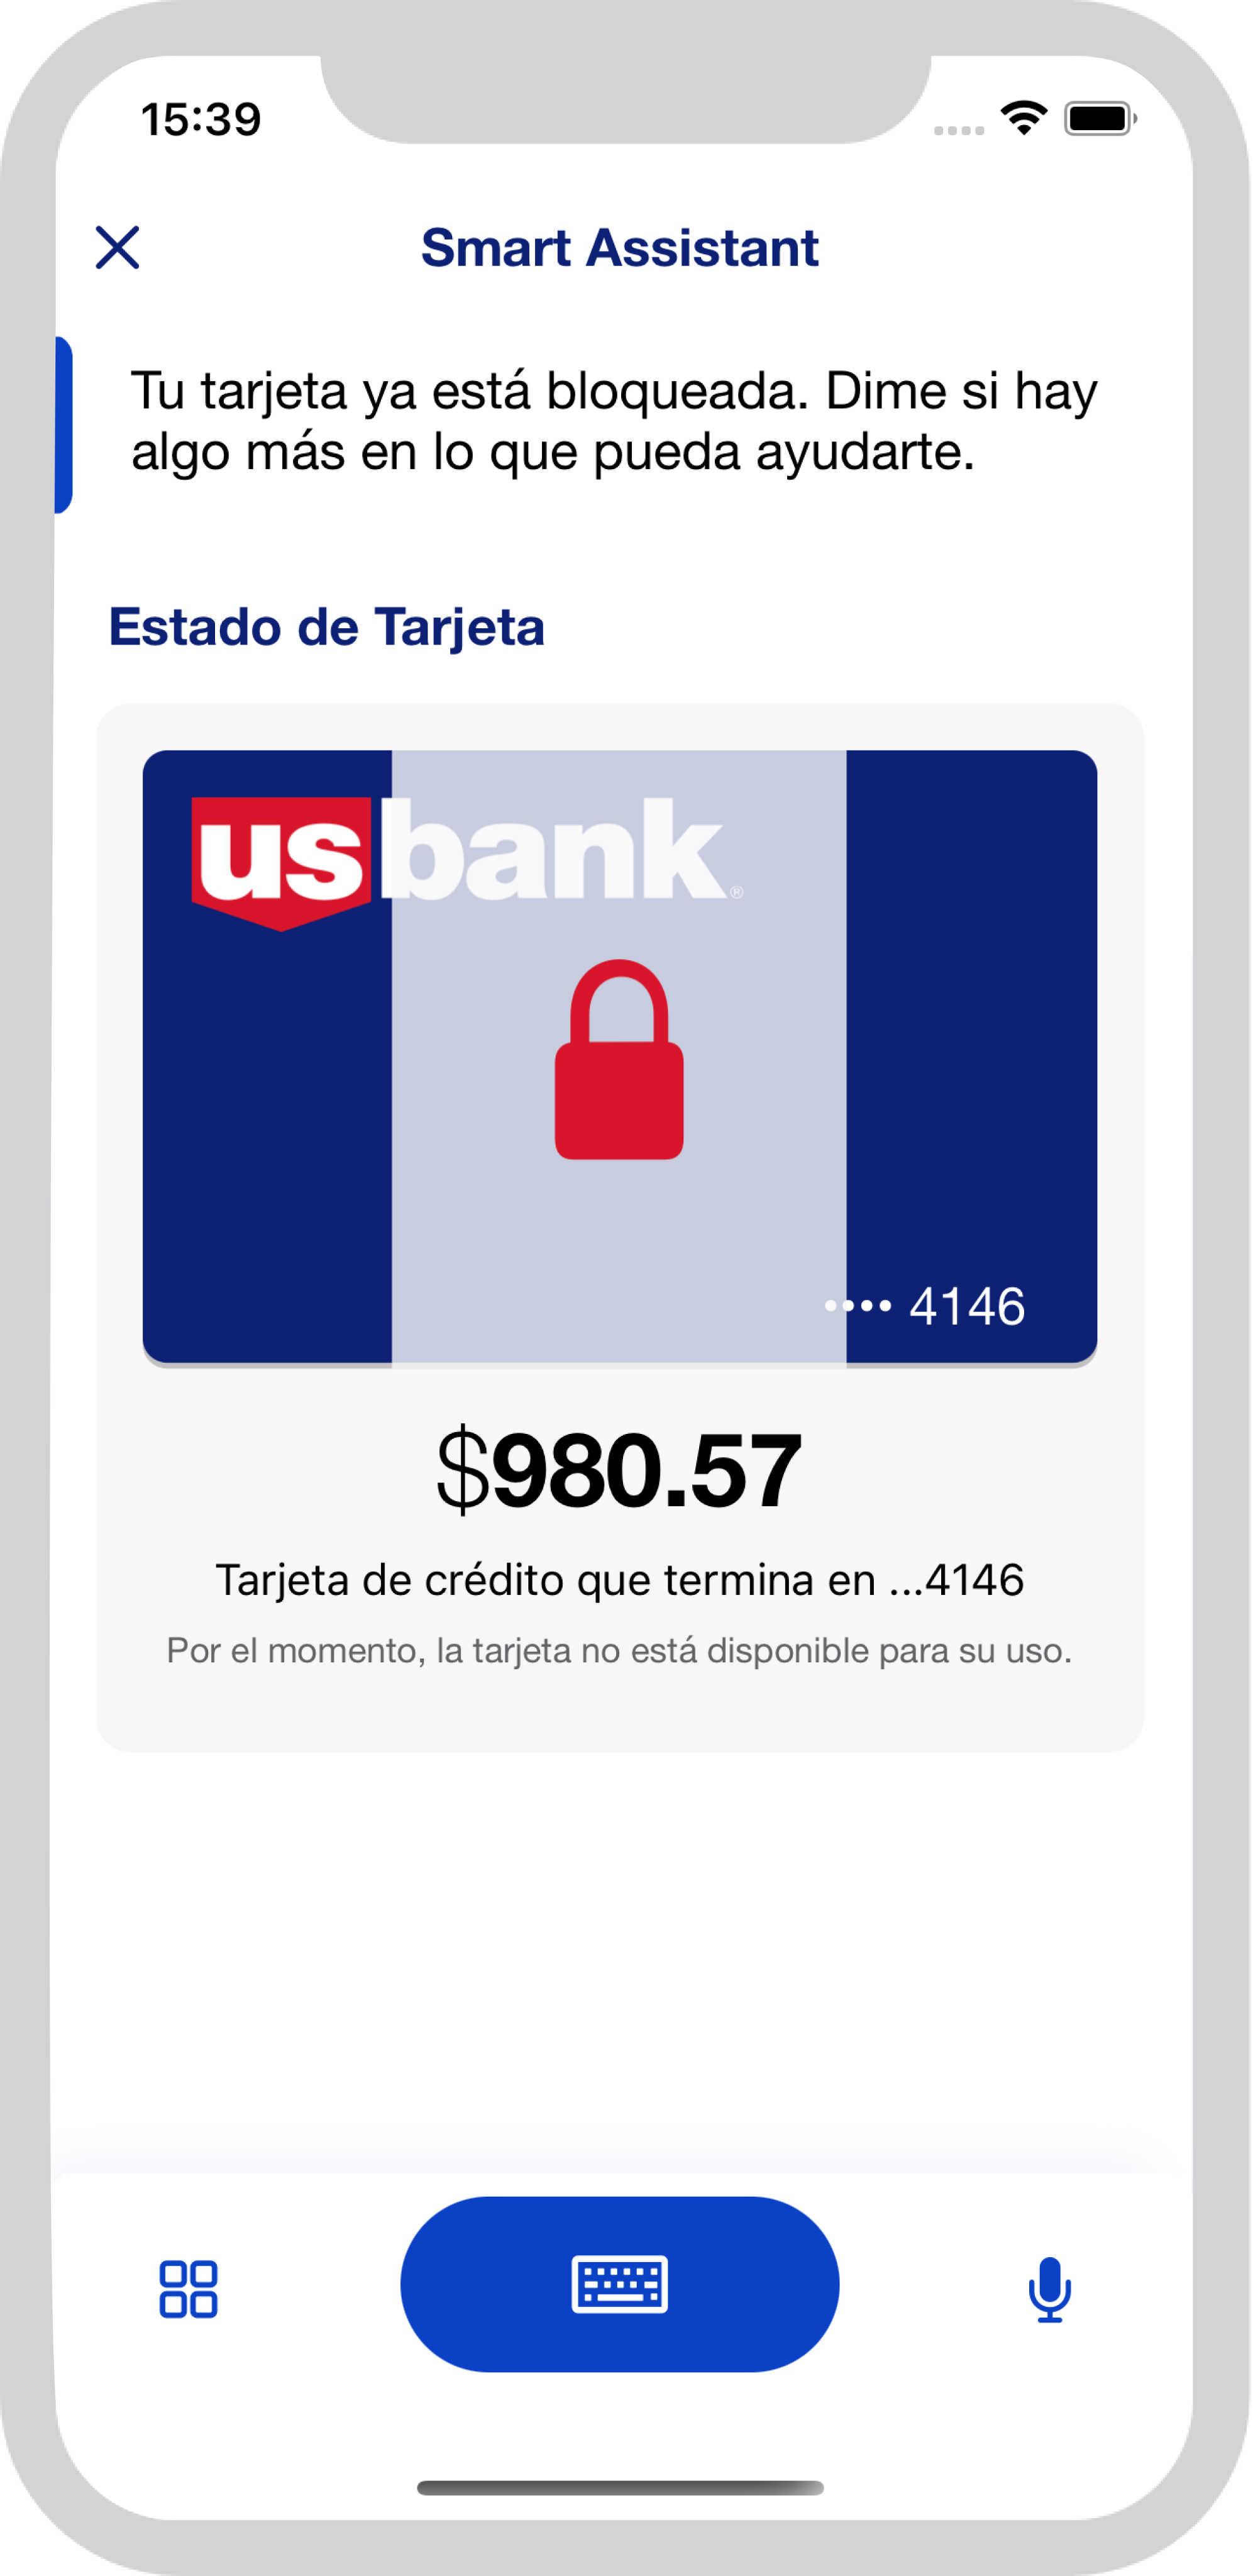 U.S. Bank Asistente Inteligente en español tarjeta bloqueada